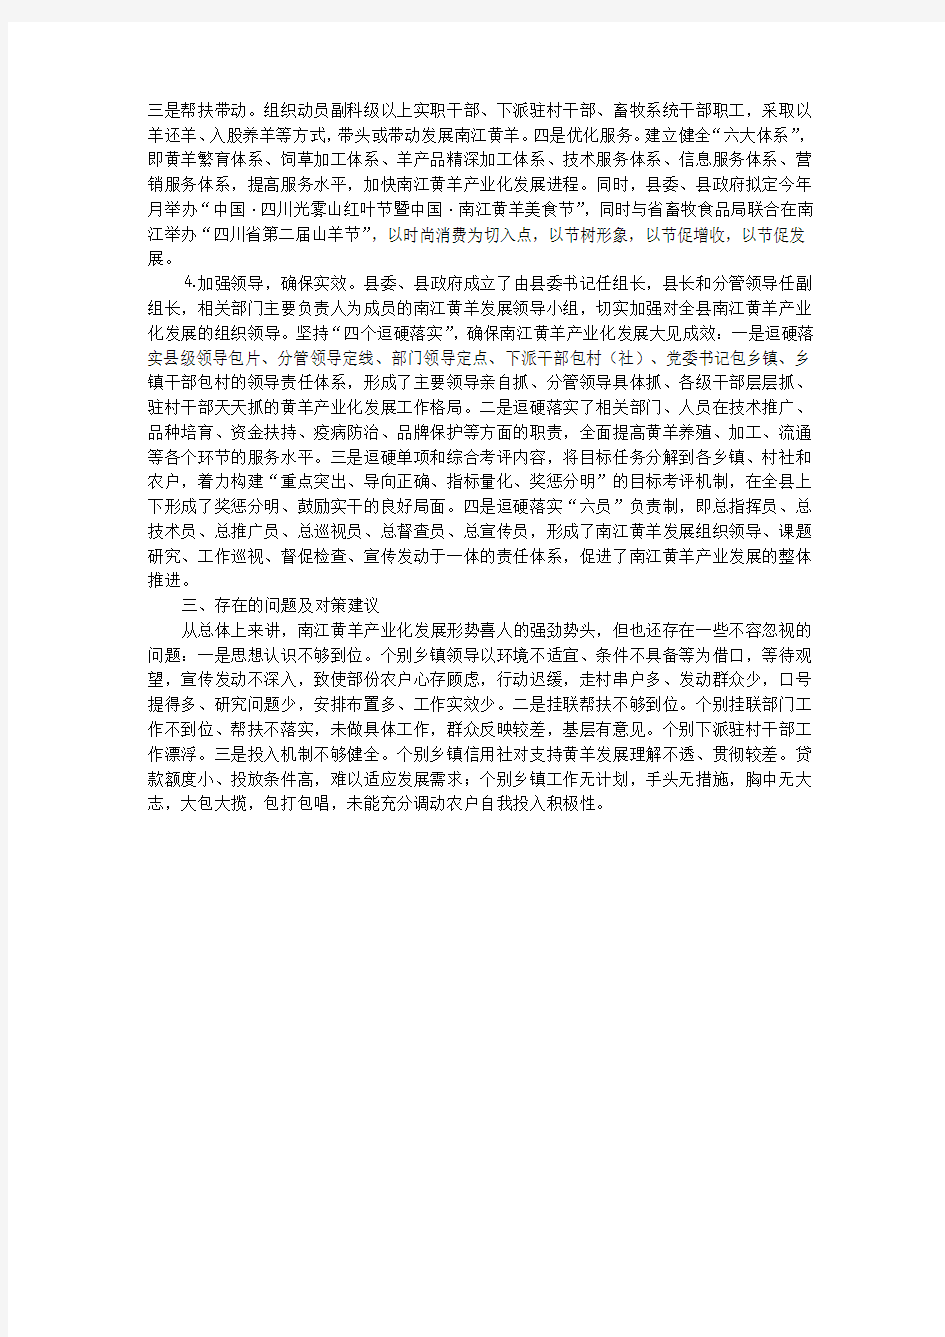 巴中市南江县黄羊产业化发展的调查报告